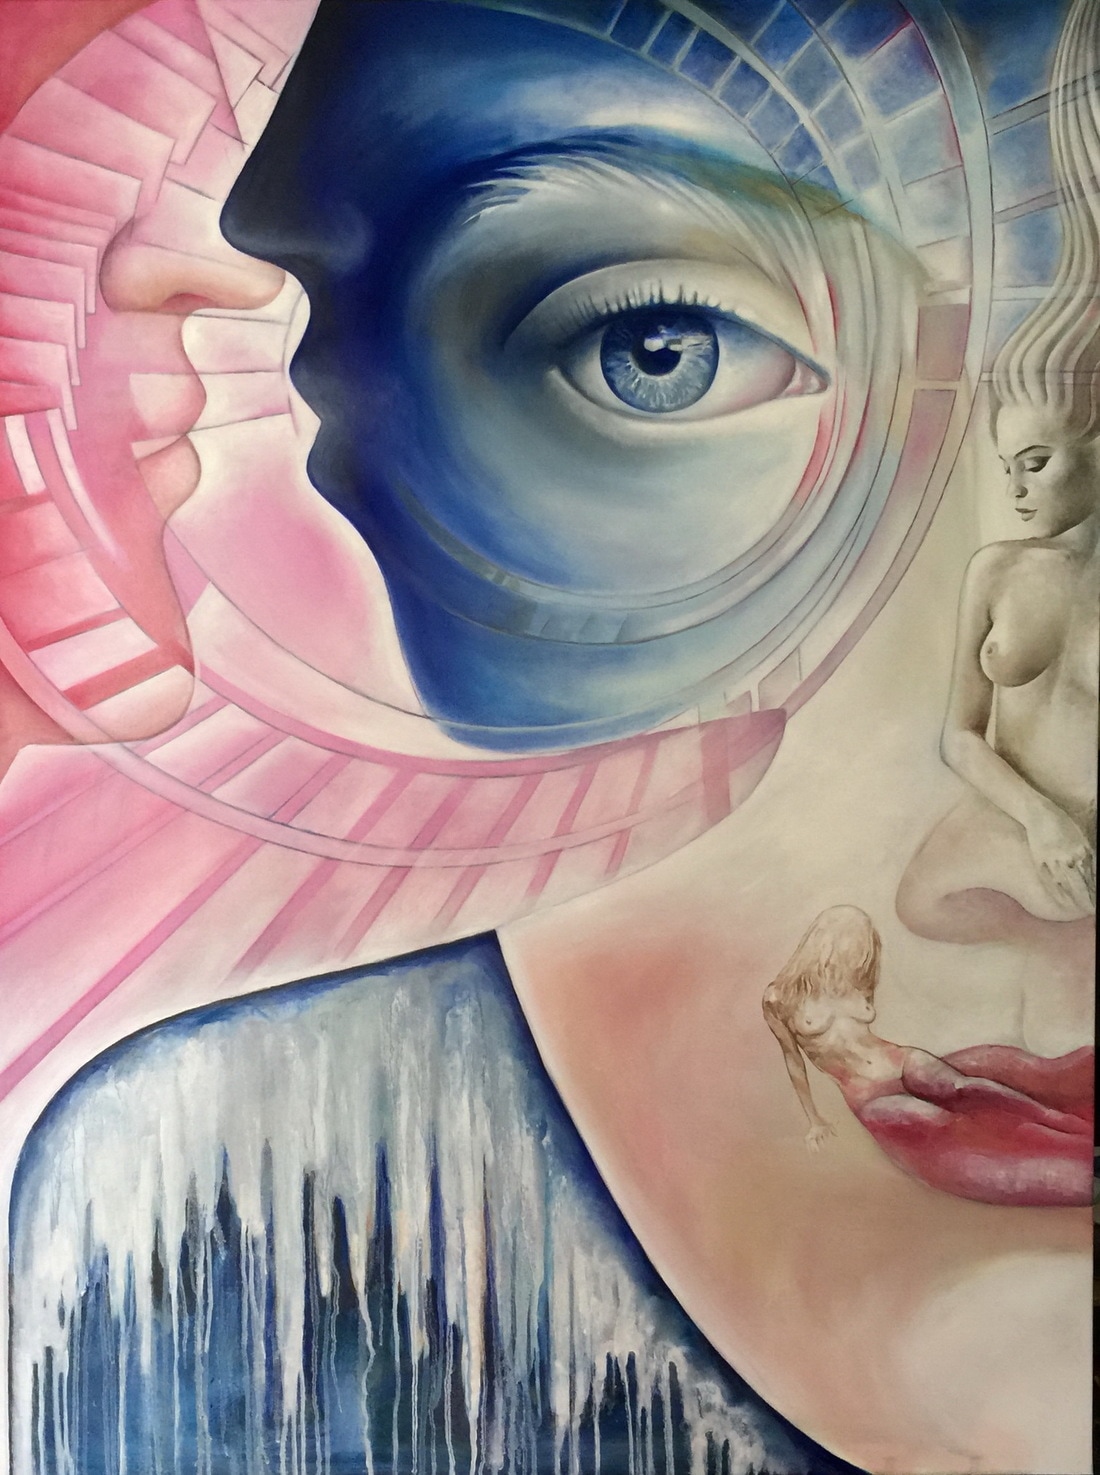 Andromeda 2 by Fatima Azimova - Oil on canvas 36x48 inches